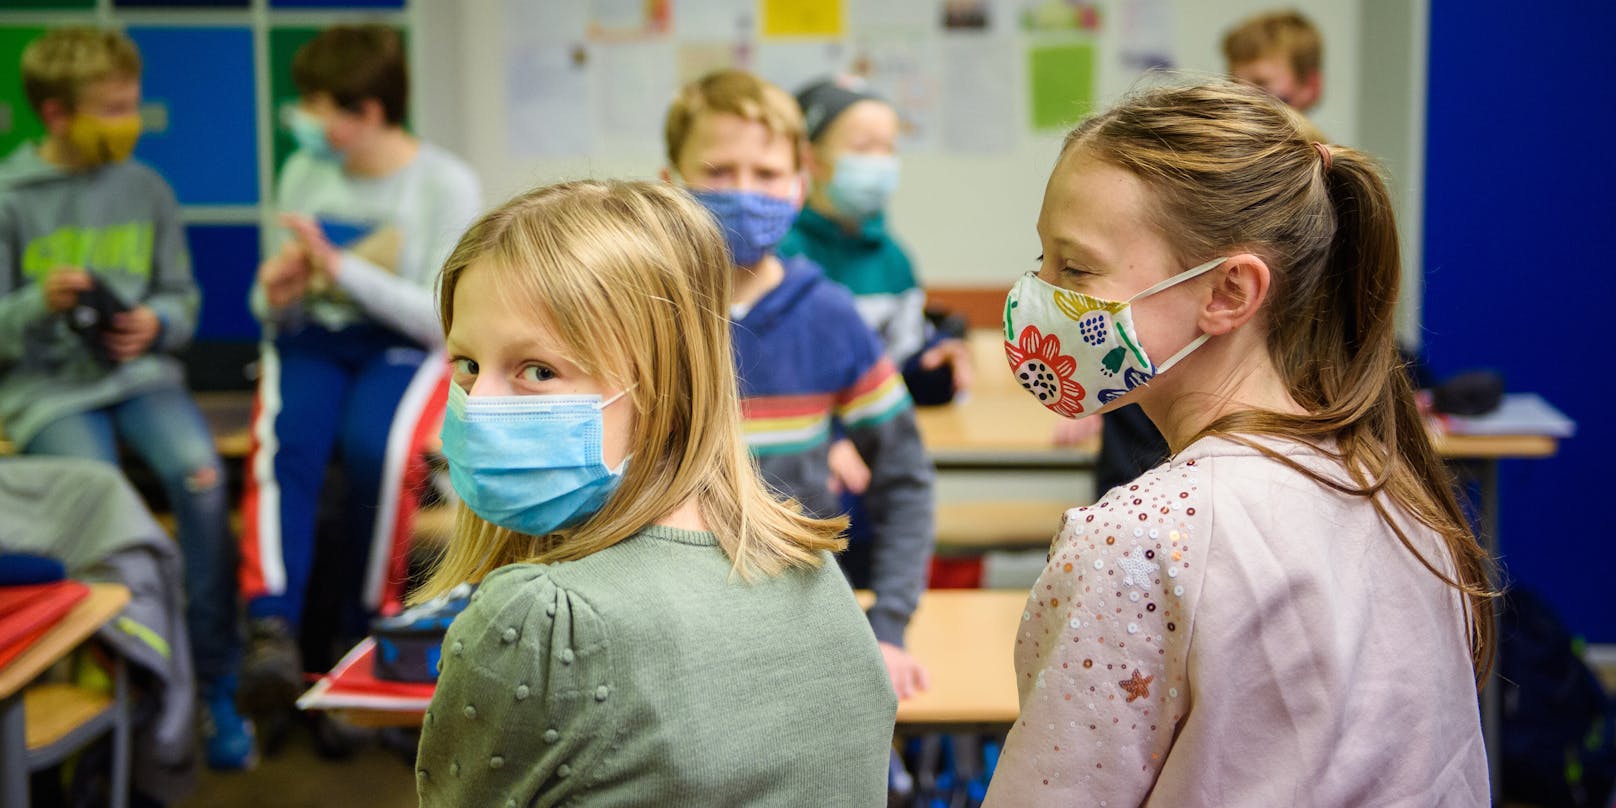 Schichtbetrieb und Schutzmasken: Die heimischen Schüler werden von der Coronakrise gebeutelt.